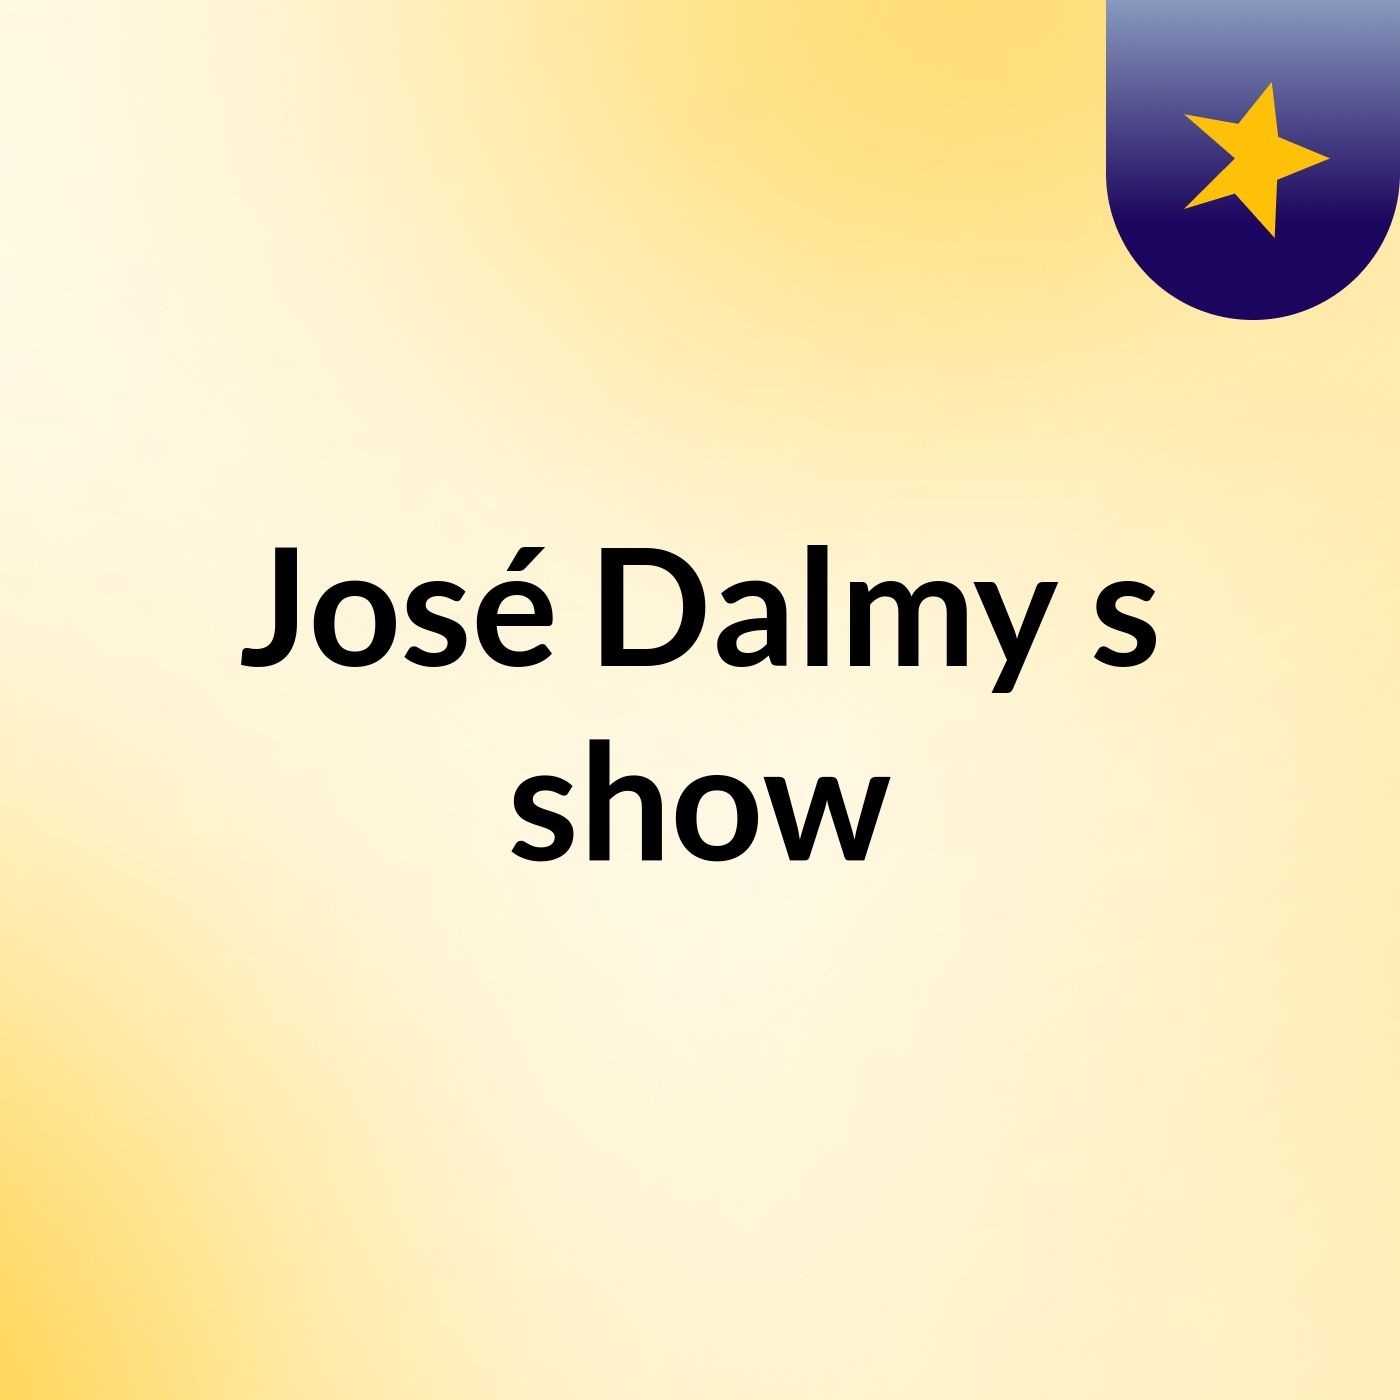 José Dalmy's show